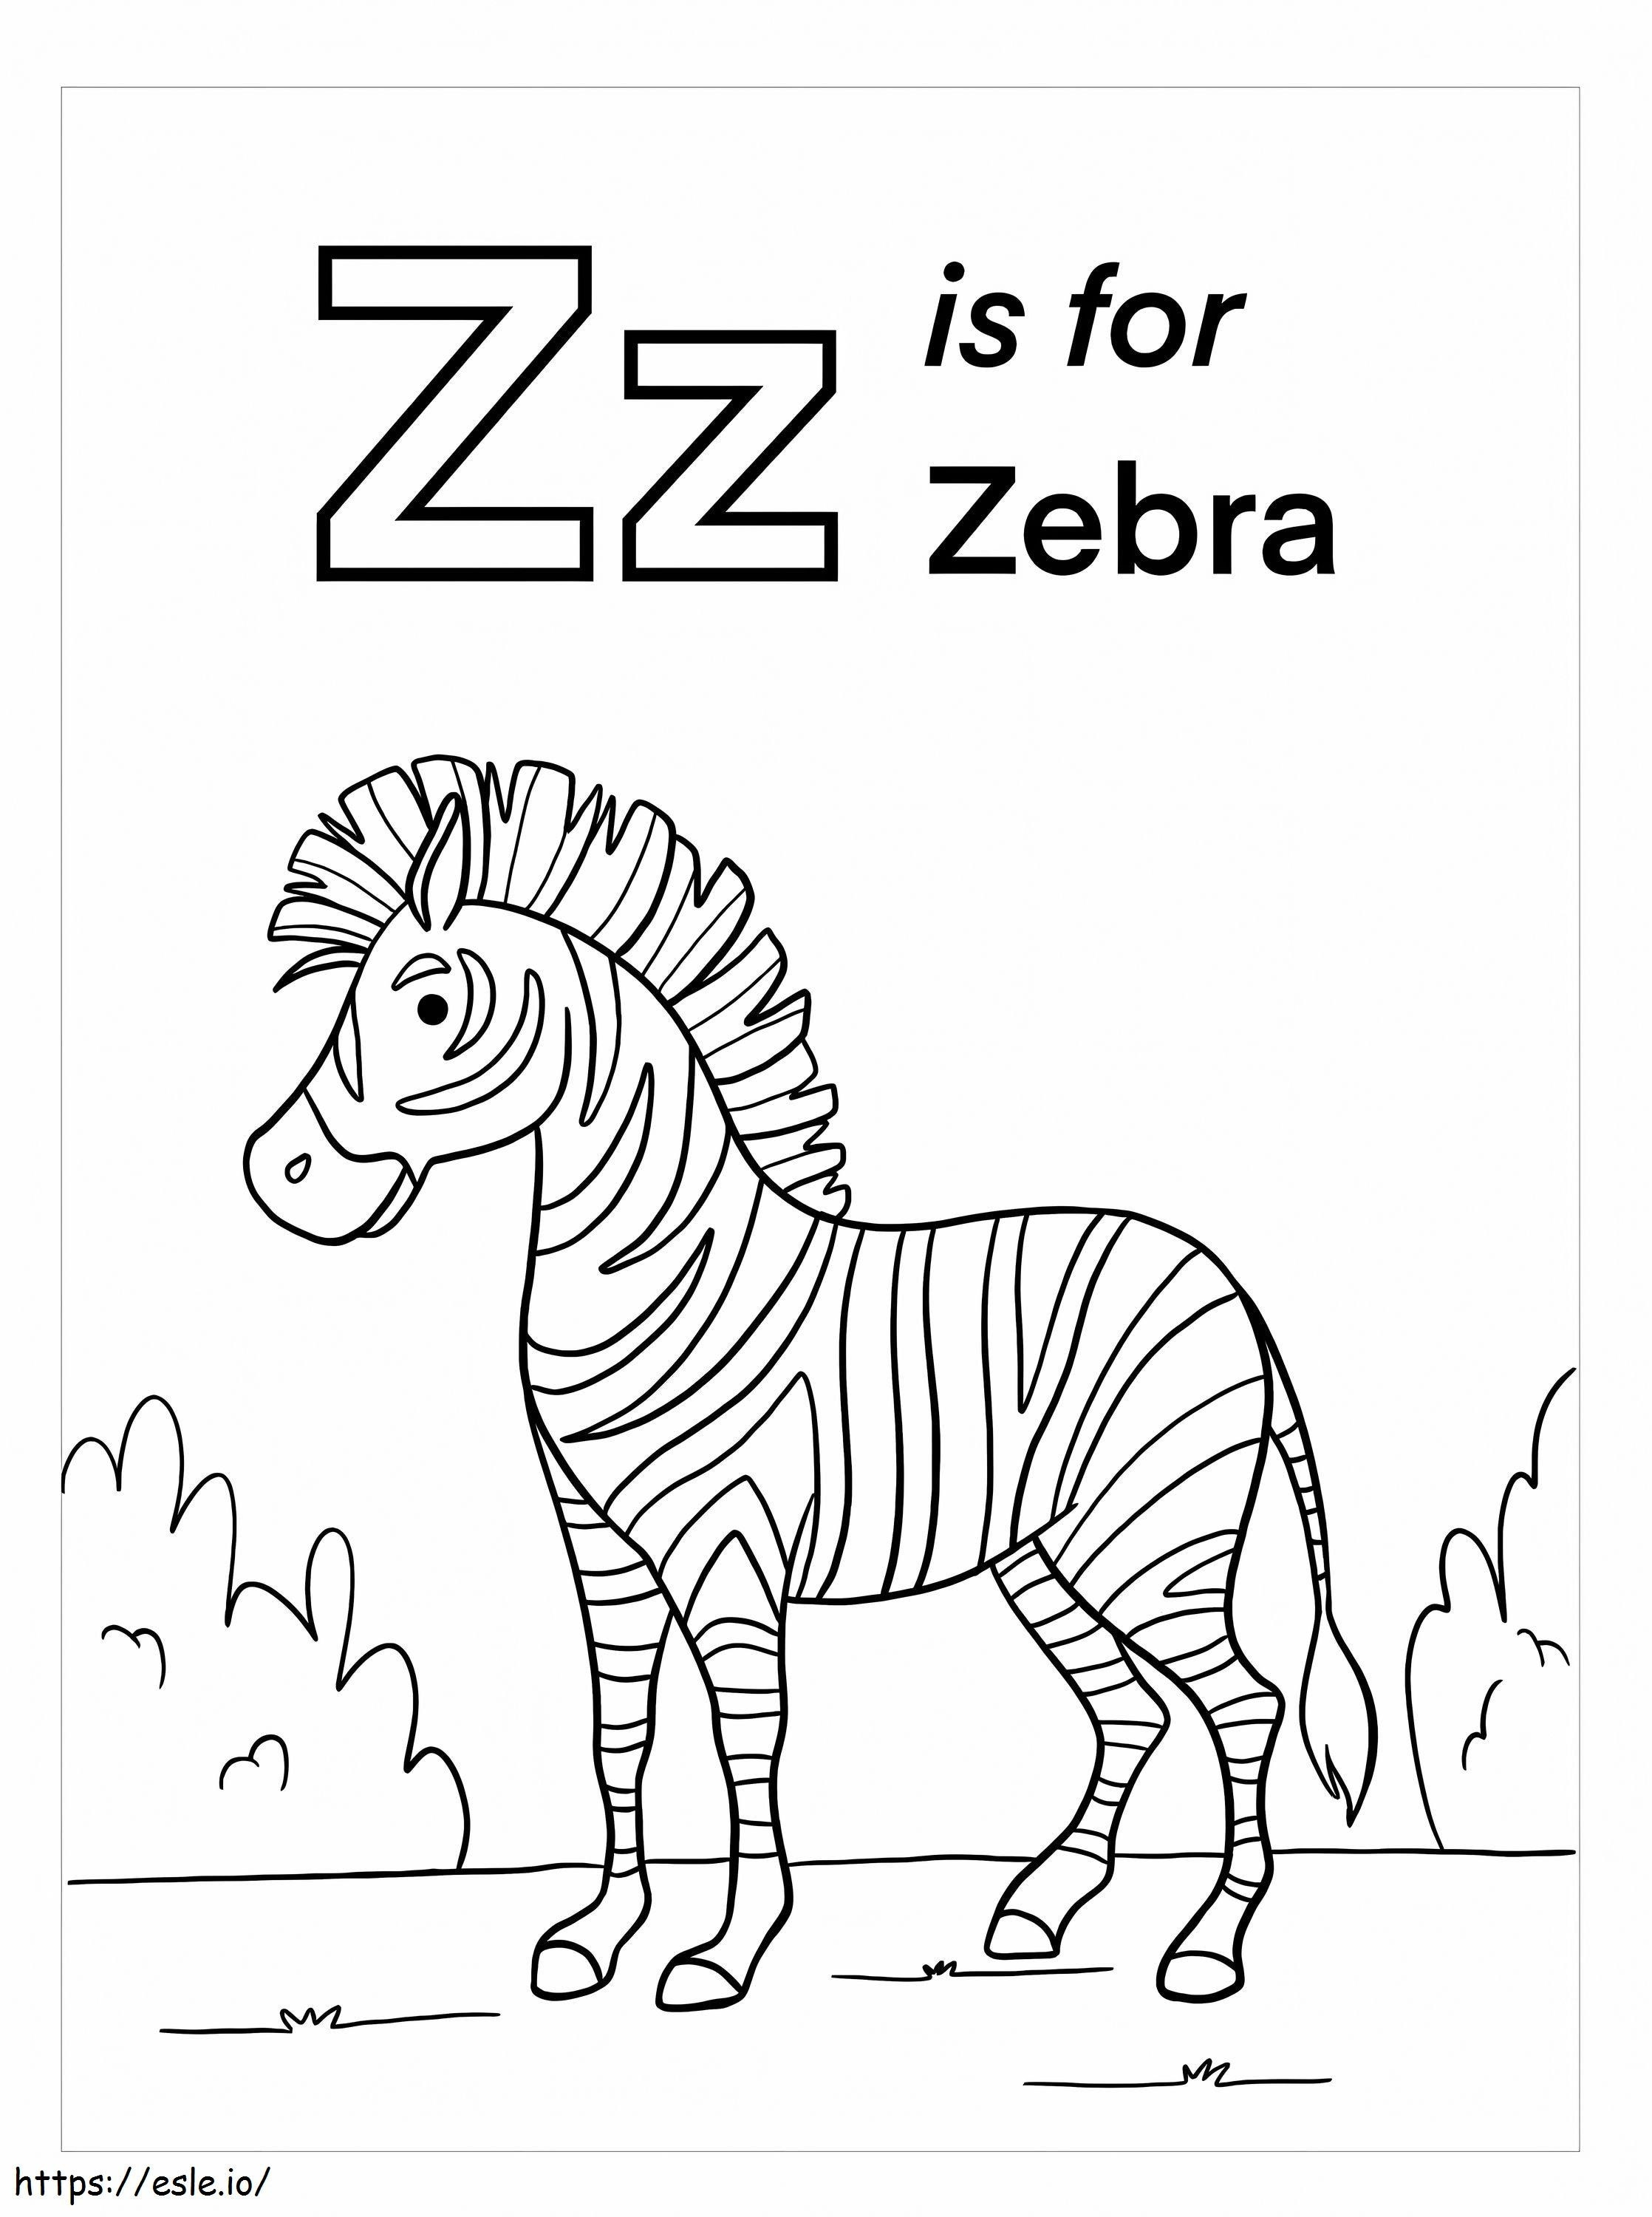 Z is voor Zebra kleurplaat kleurplaat